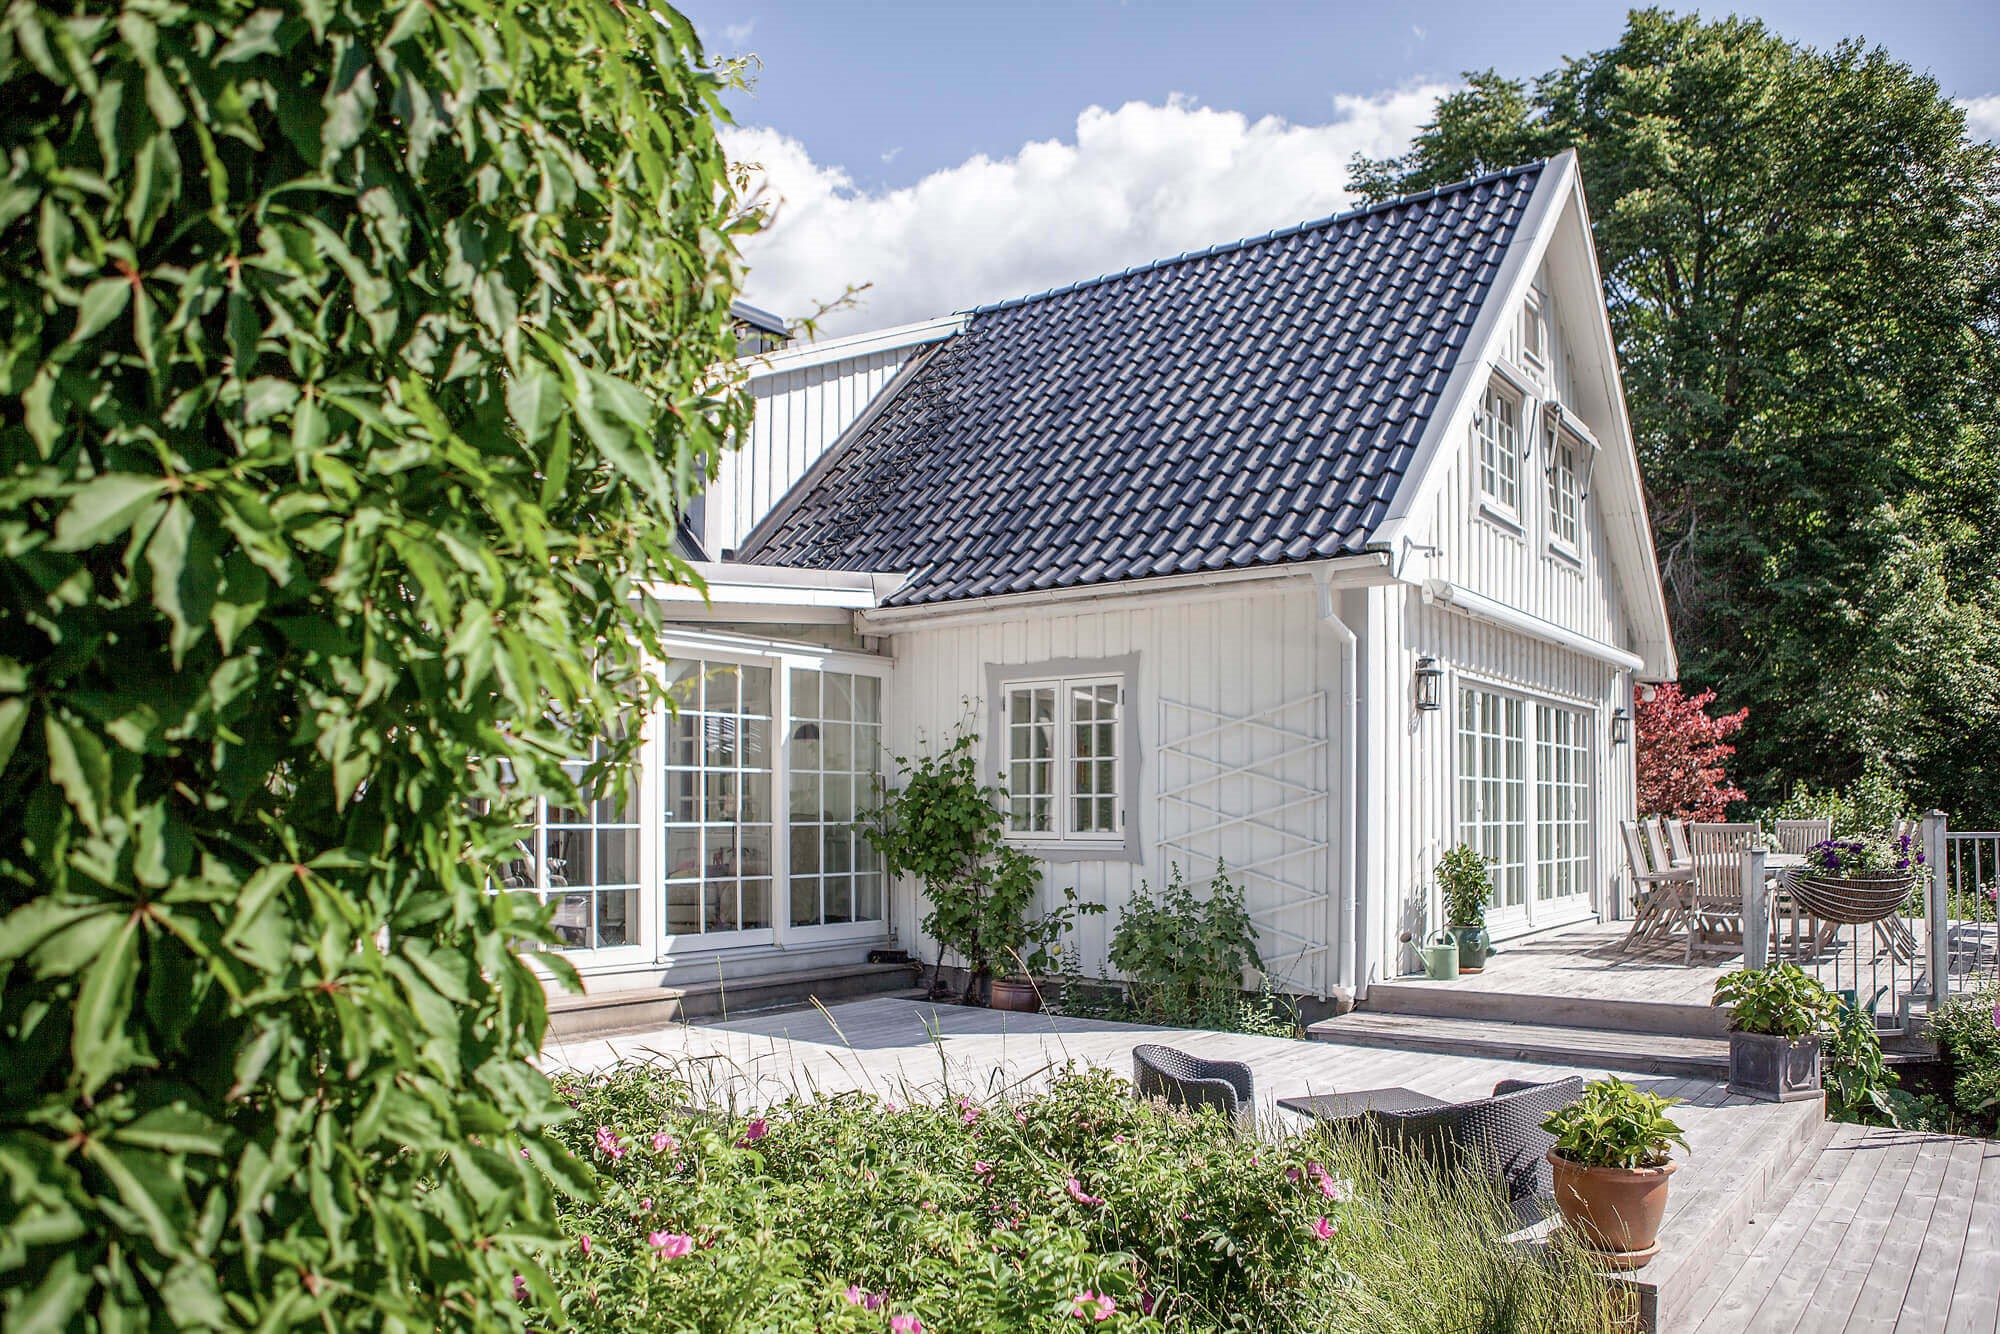 Fönster från Ekstrands - Hållbara klassiska träfönster med spröjs på 1800-tals villa